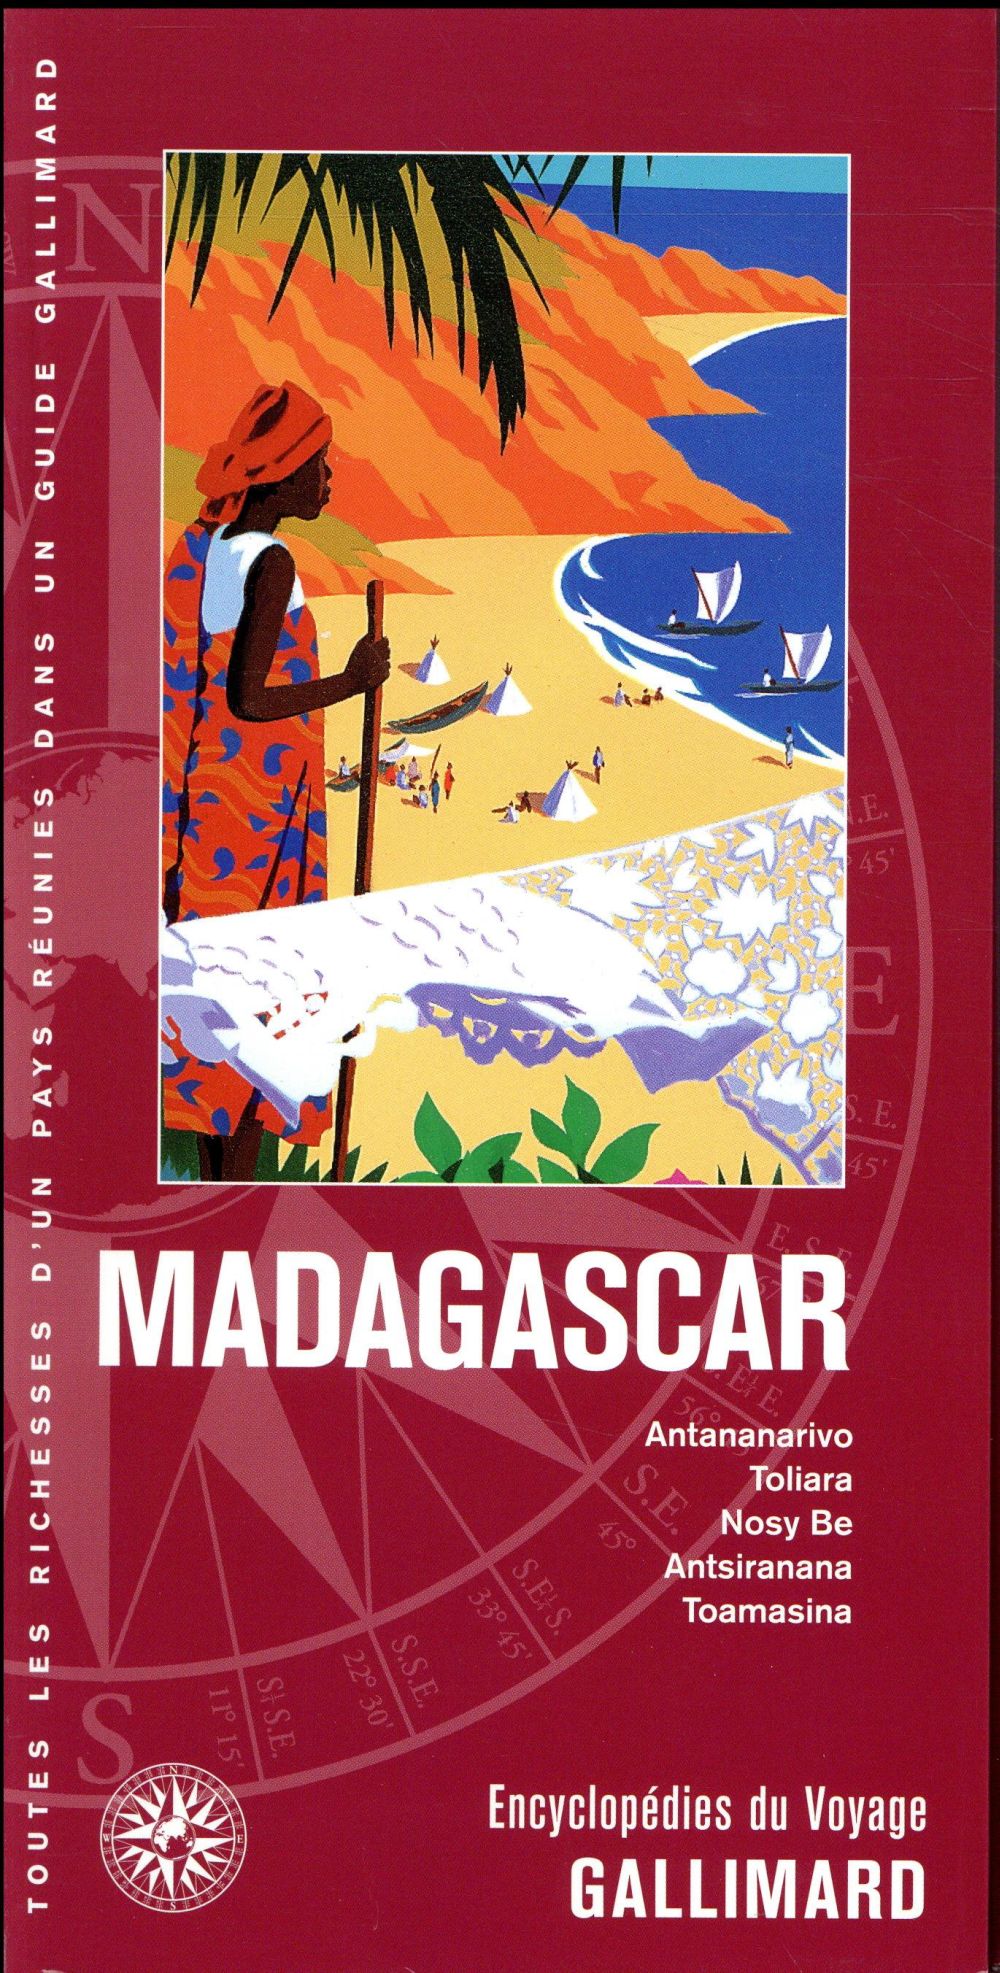 MADAGASCAR - ANTANANARIVO, TOLIARA, NOSY BE, ANTSIRANANA, TOAMASINA